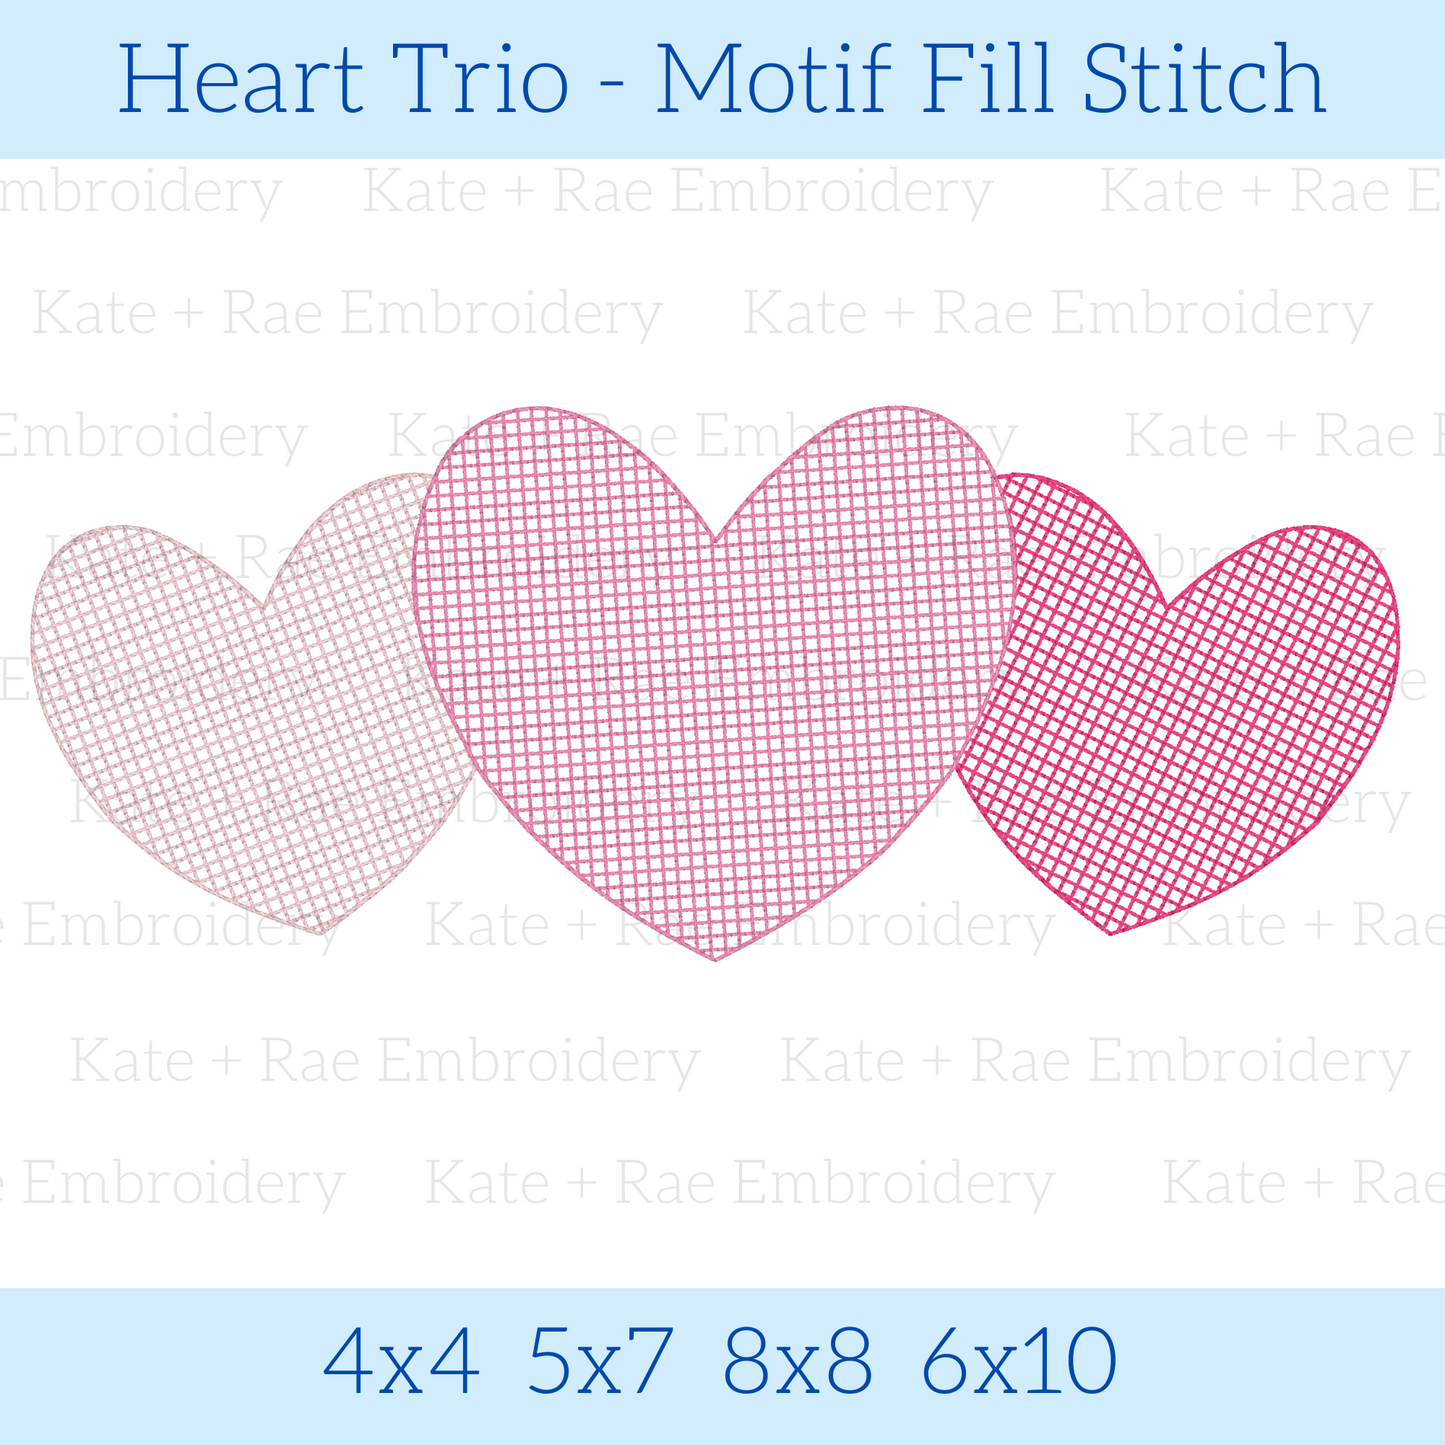 Heart Trio Motif Fill Stitch Embroidery Design